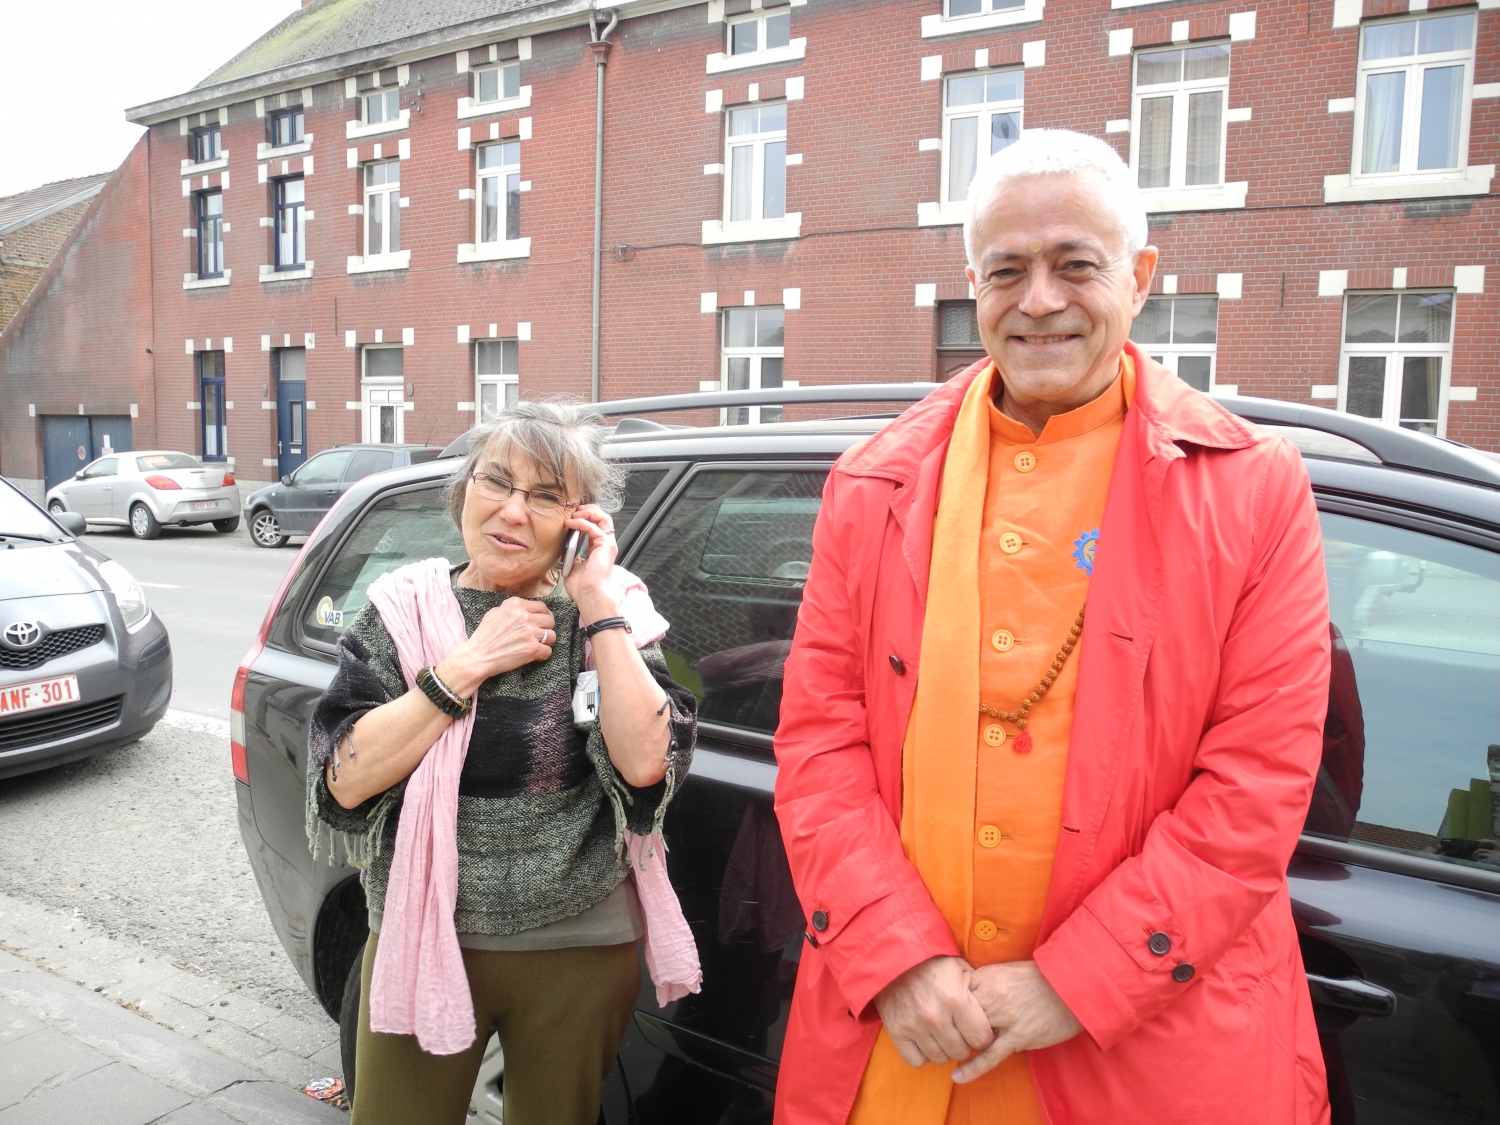 Encontro de H.H. Jagat Guru Amrta Sūryānanda Mahā Rāja com o Mestre Thierry Van Brabant - Centre Samtosha, Jodoigne, Bélgica - 2012, Março